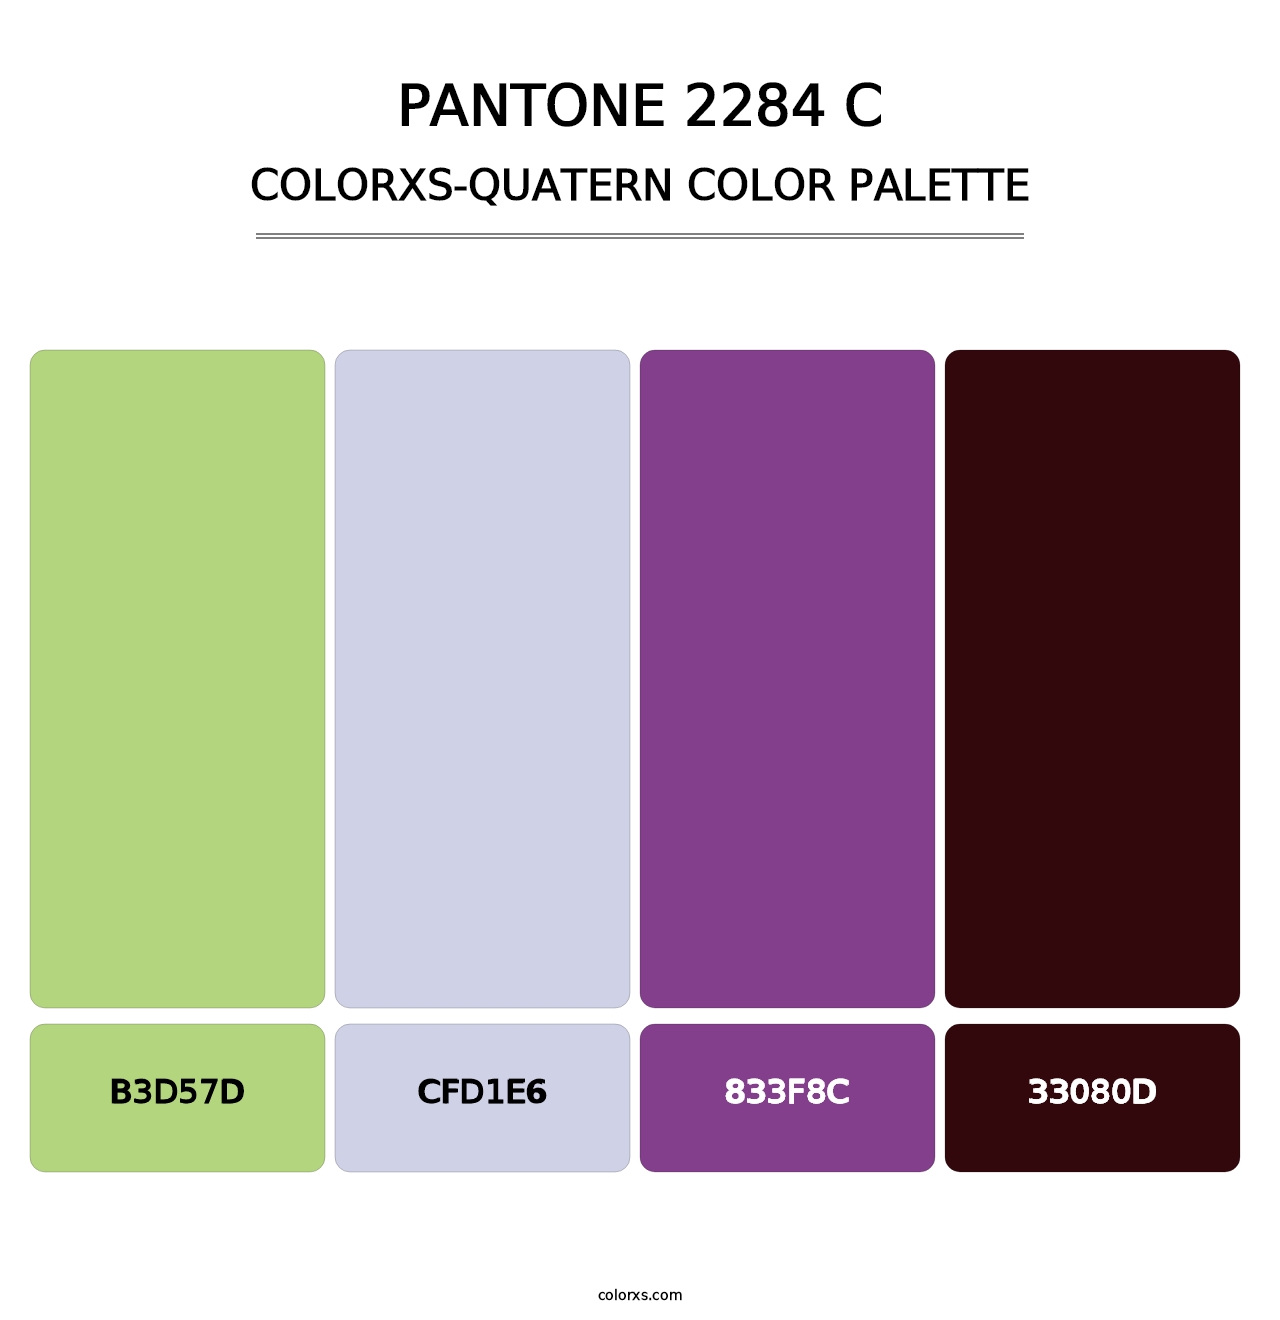 PANTONE 2284 C - Colorxs Quatern Palette